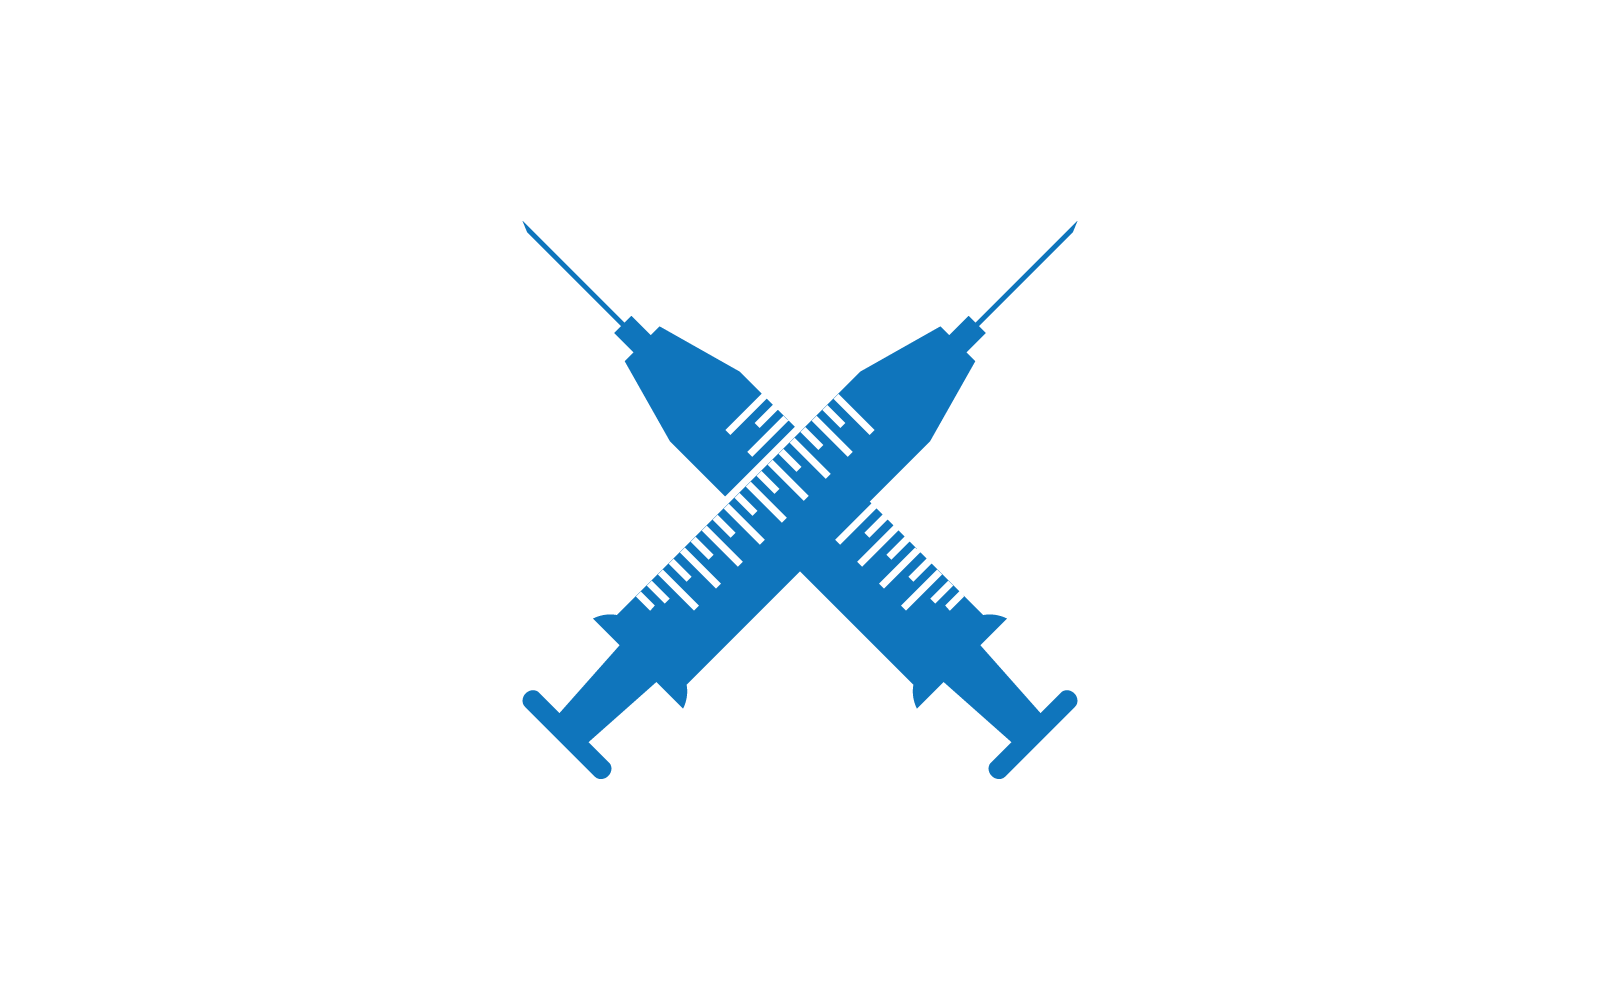 Vaccine covid 19 logo icon vector flat design